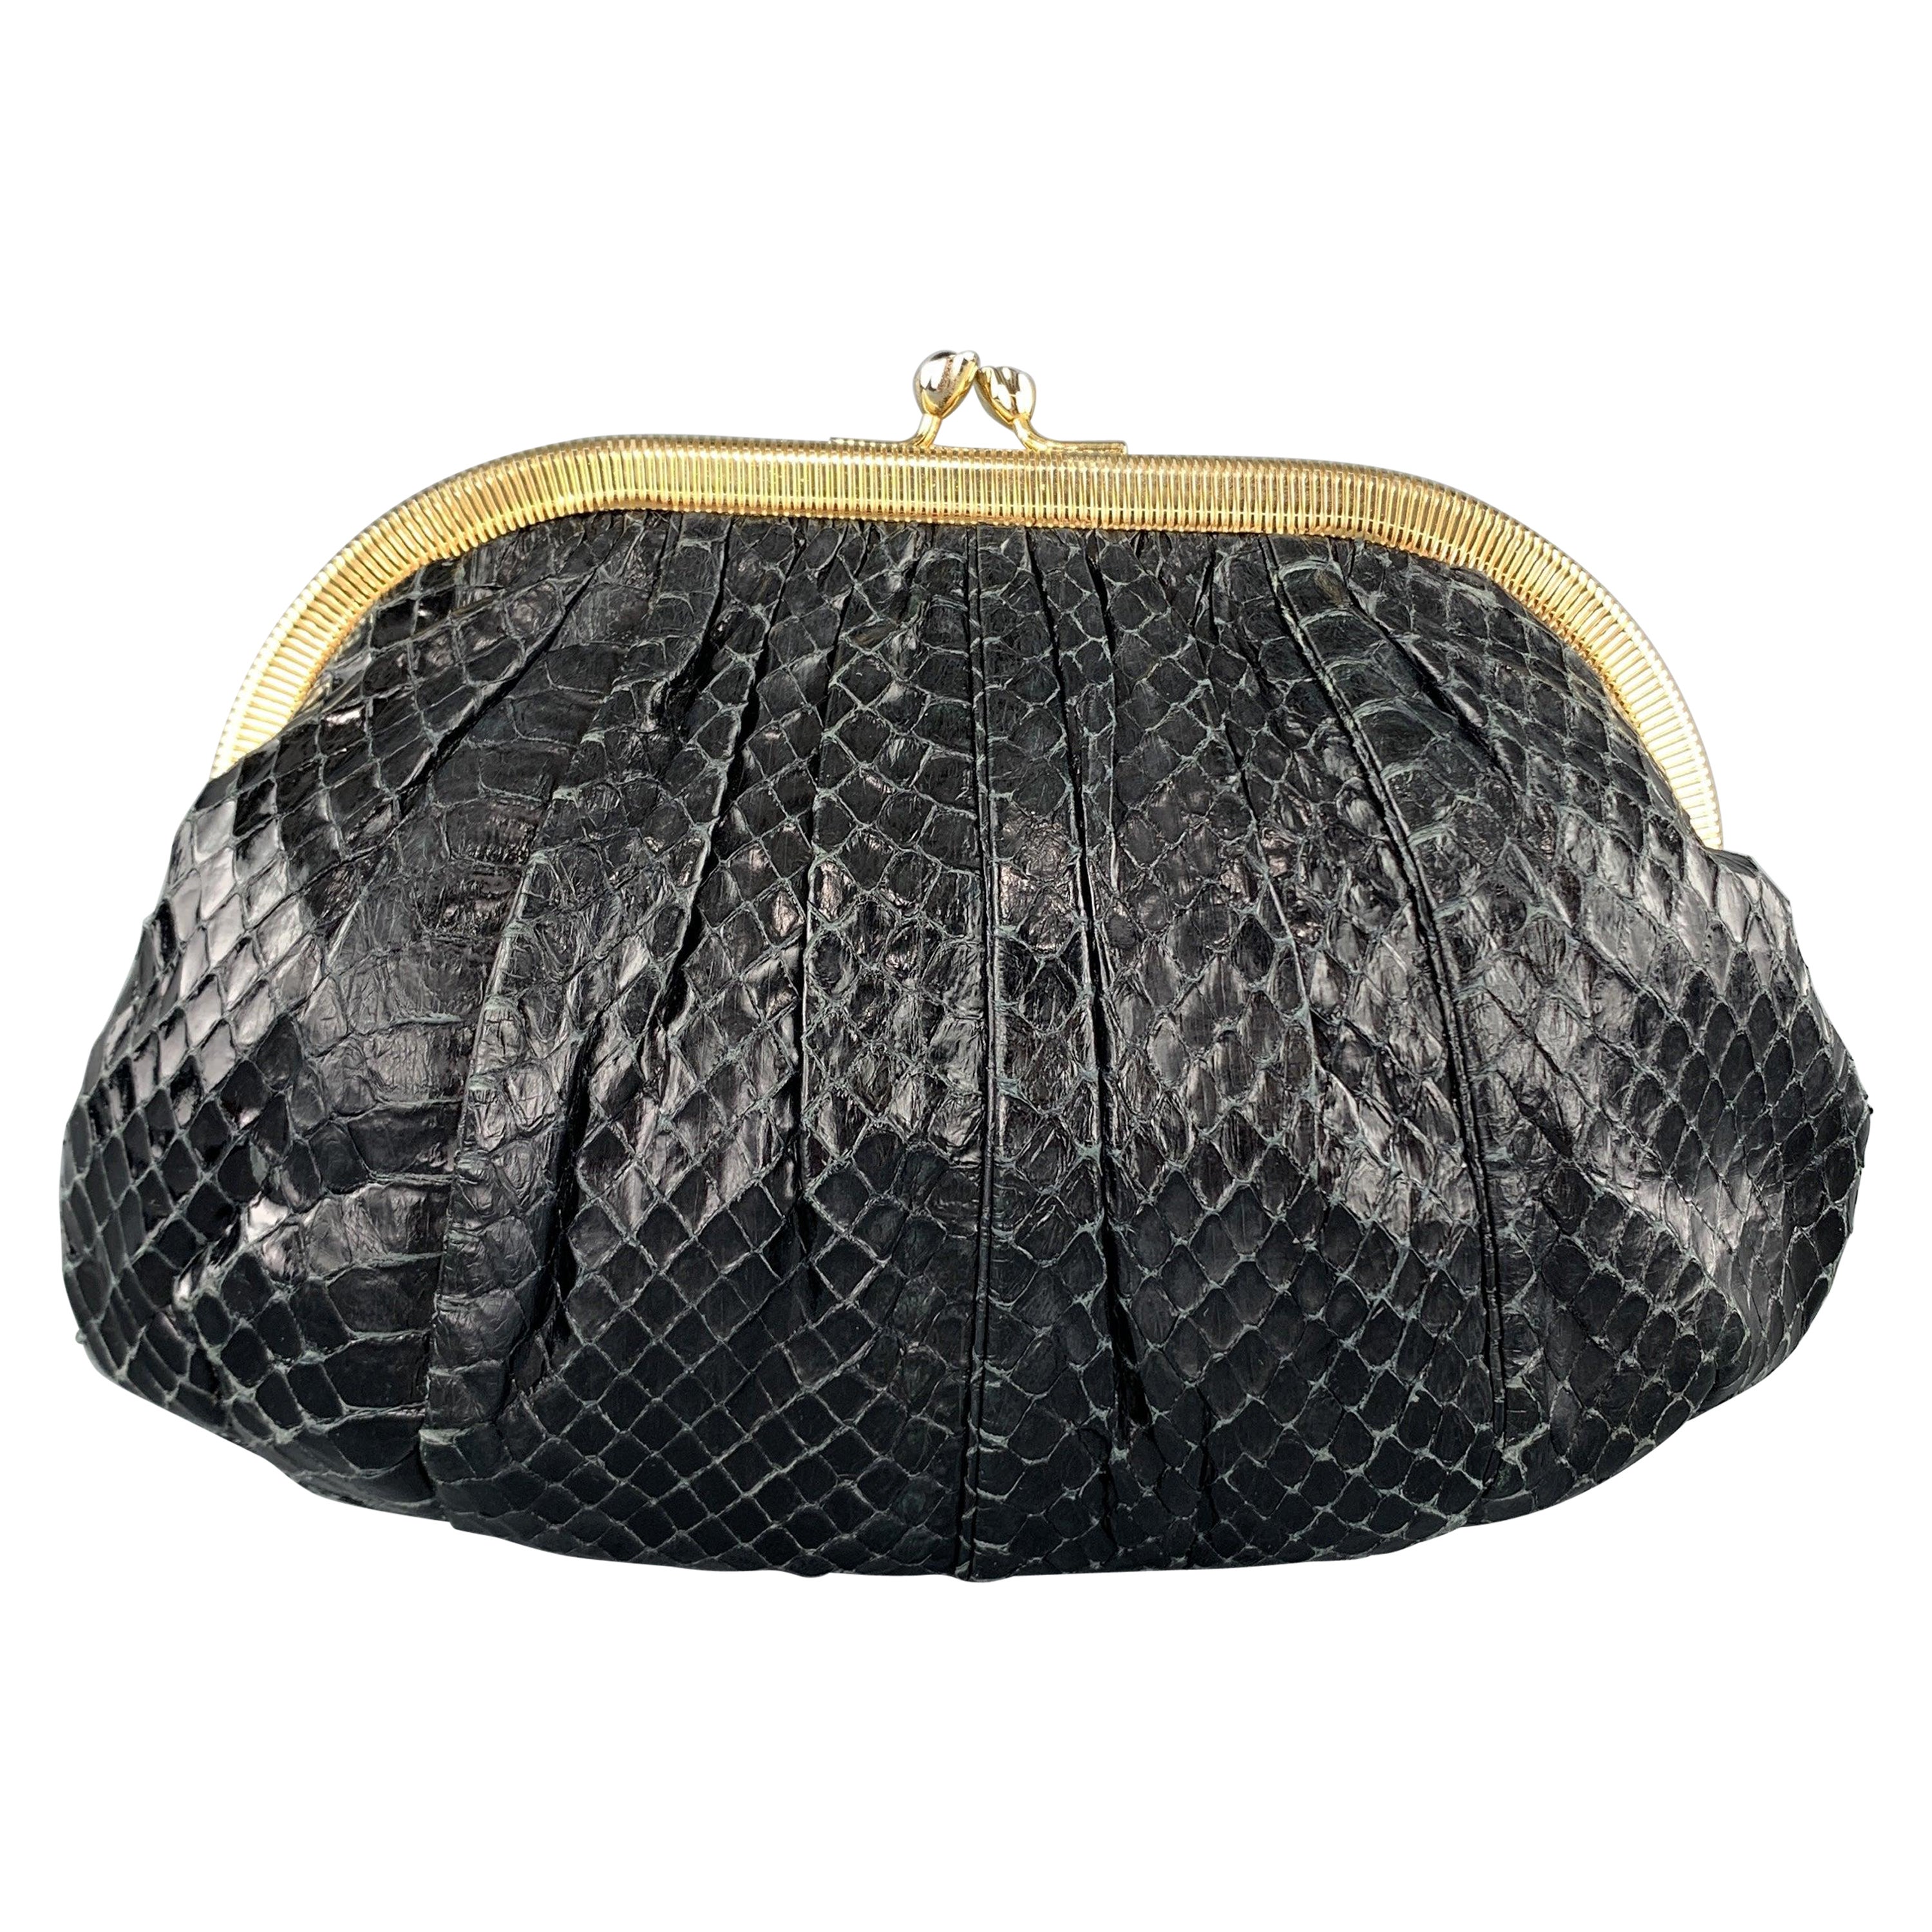 JUDITH LEIBER Ruched Black Snake Skin Evening Clutch Handbag For Sale